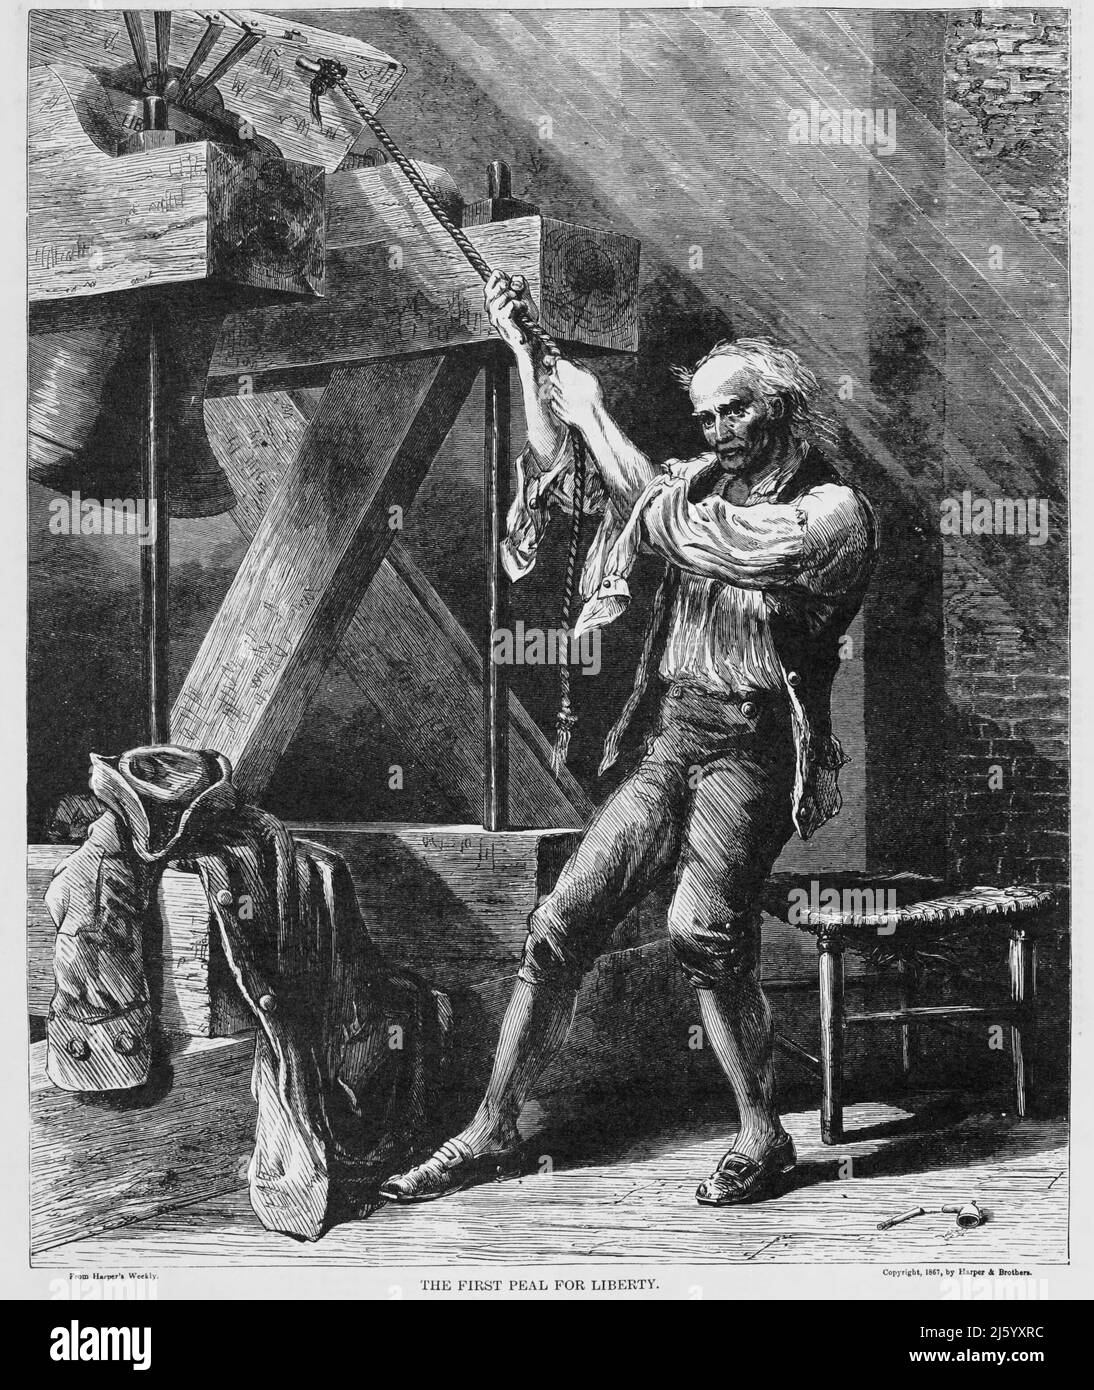 La prima Peal for Liberty nella Guerra rivoluzionaria americana. illustrazione del 19th secolo Foto Stock